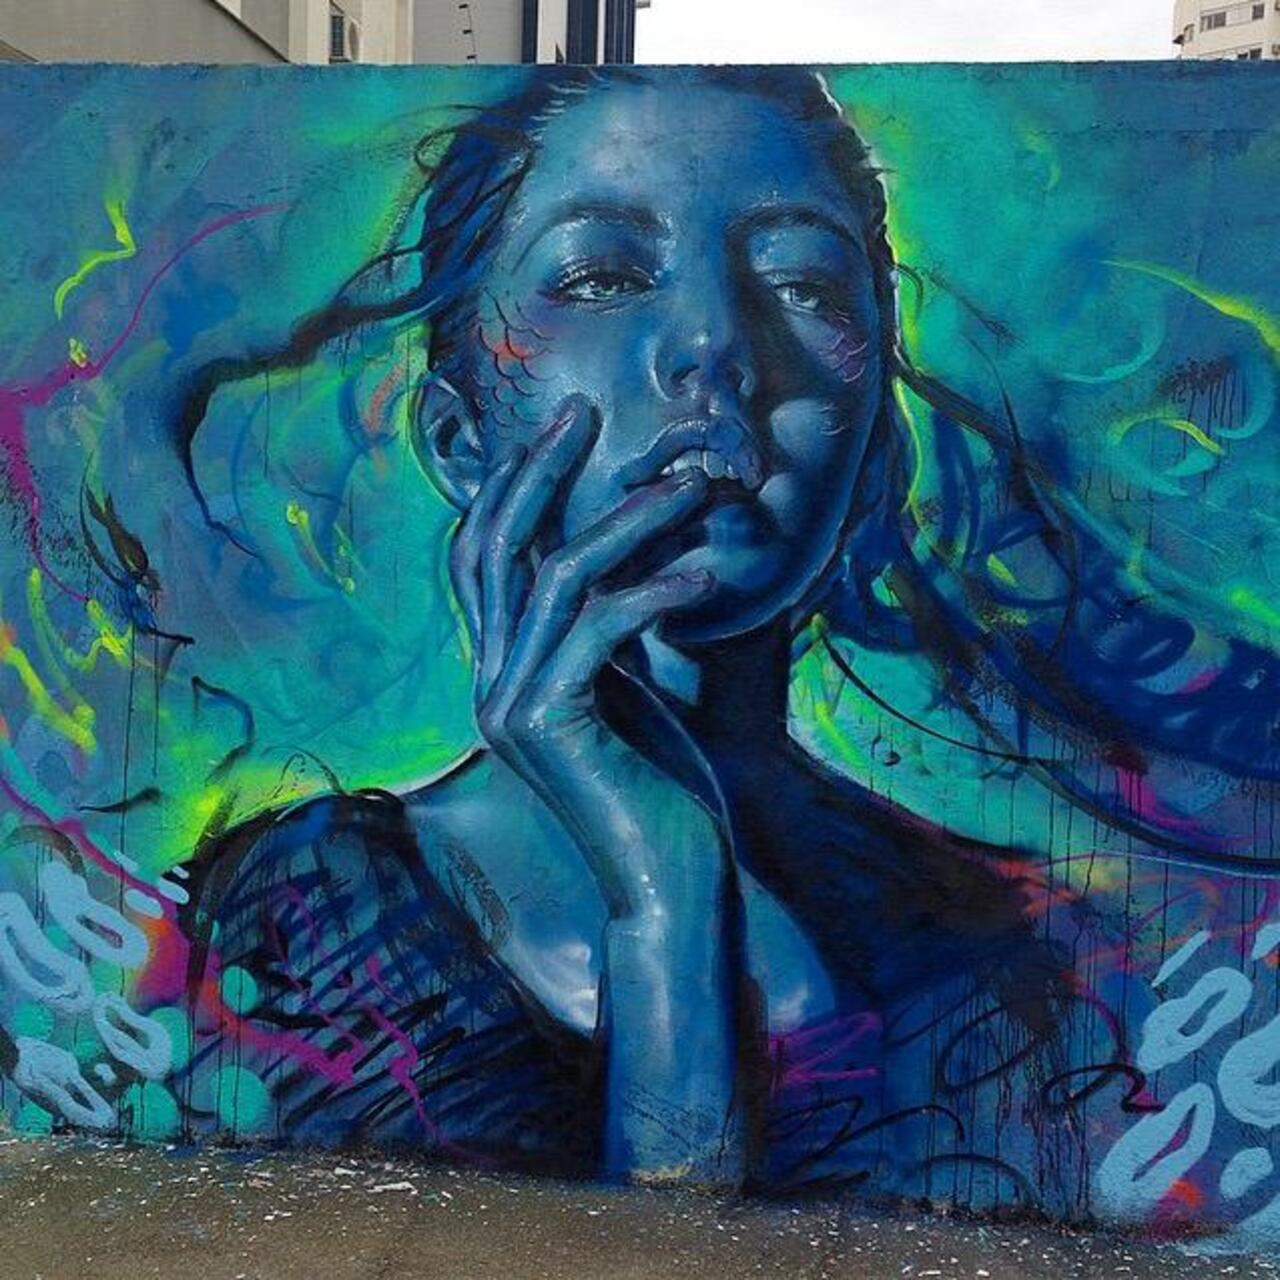 New tumblr post: "Thiago Valdi new Street Art piece titled 'Day Dreamer'

#art #mural #graffiti #streetart http://t.co/2BapPc6xIx" …